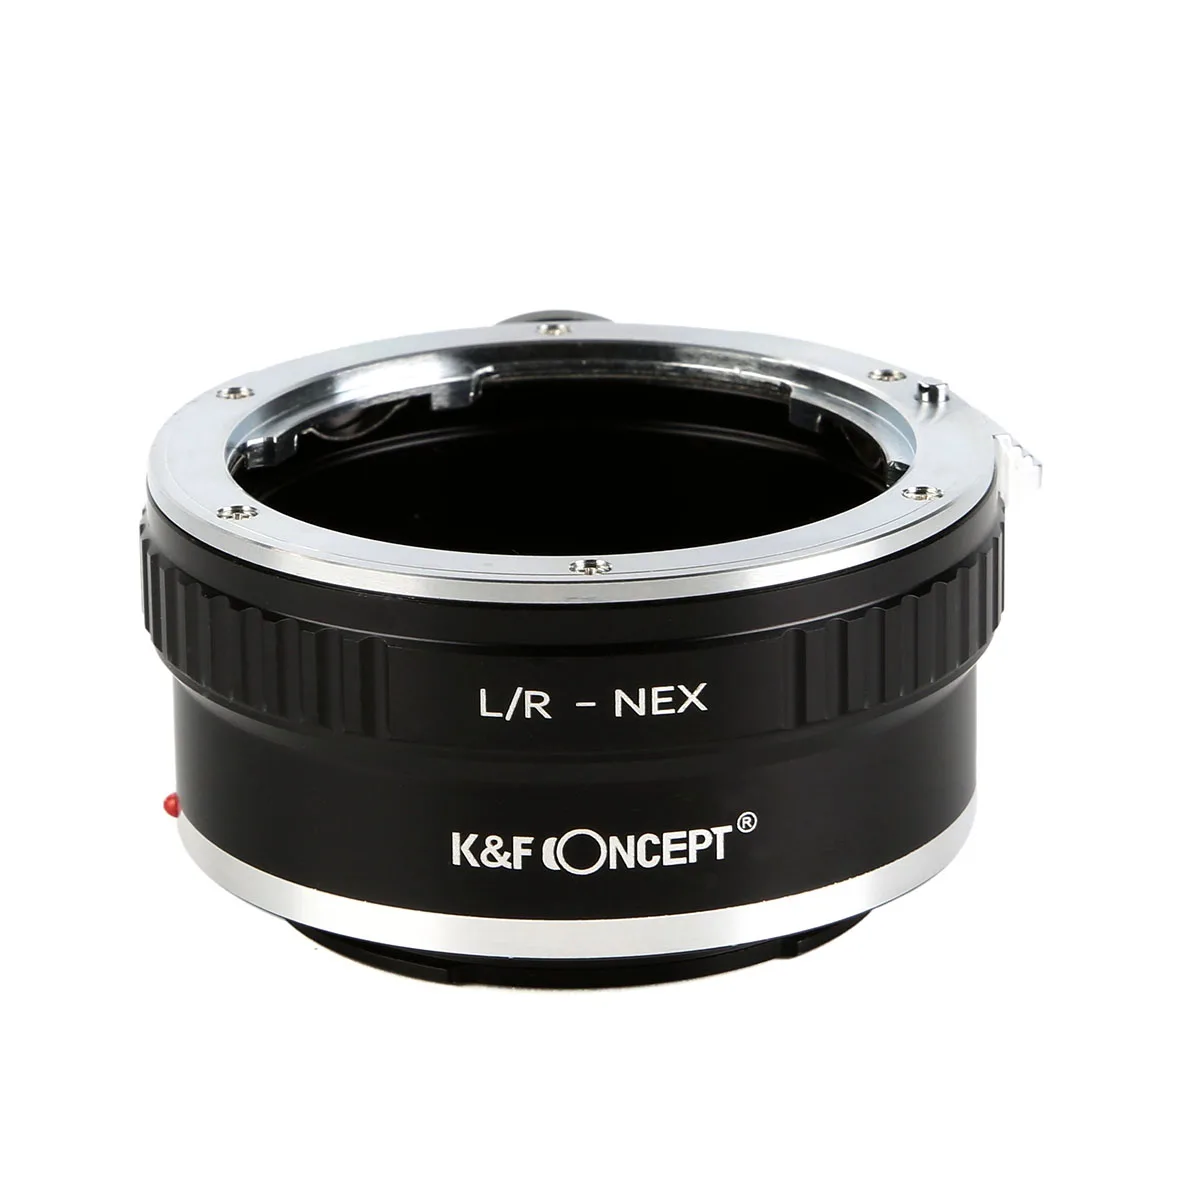 

K & F Concept L/R-NEX (со штативом) объектив переходник для Leica LR R Крепление объектива для Sony E крепление камеры a1 ZV-E10 FX30 A7R2 A7S3 A7M4